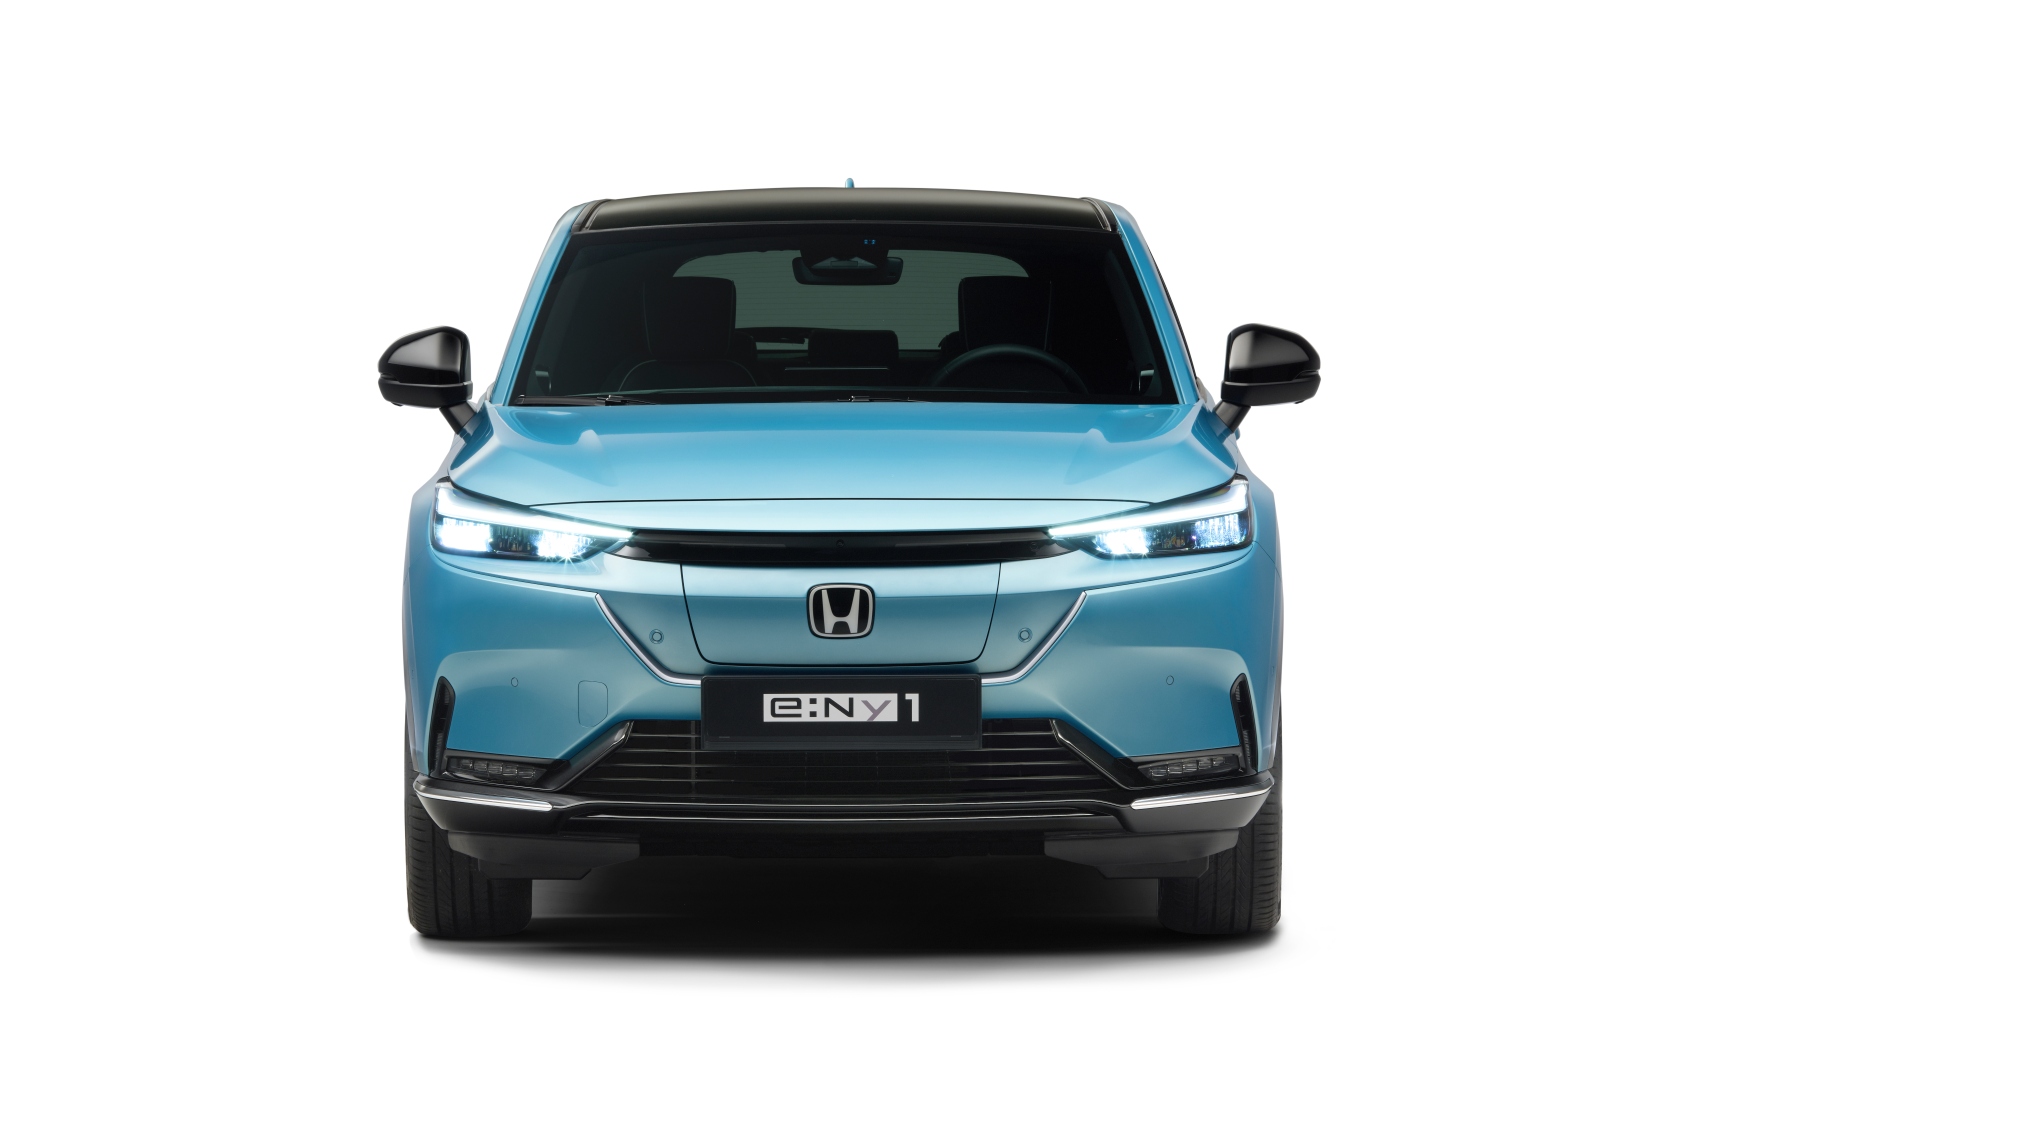 e:Ny1: The next all-electric vehicle from Honda